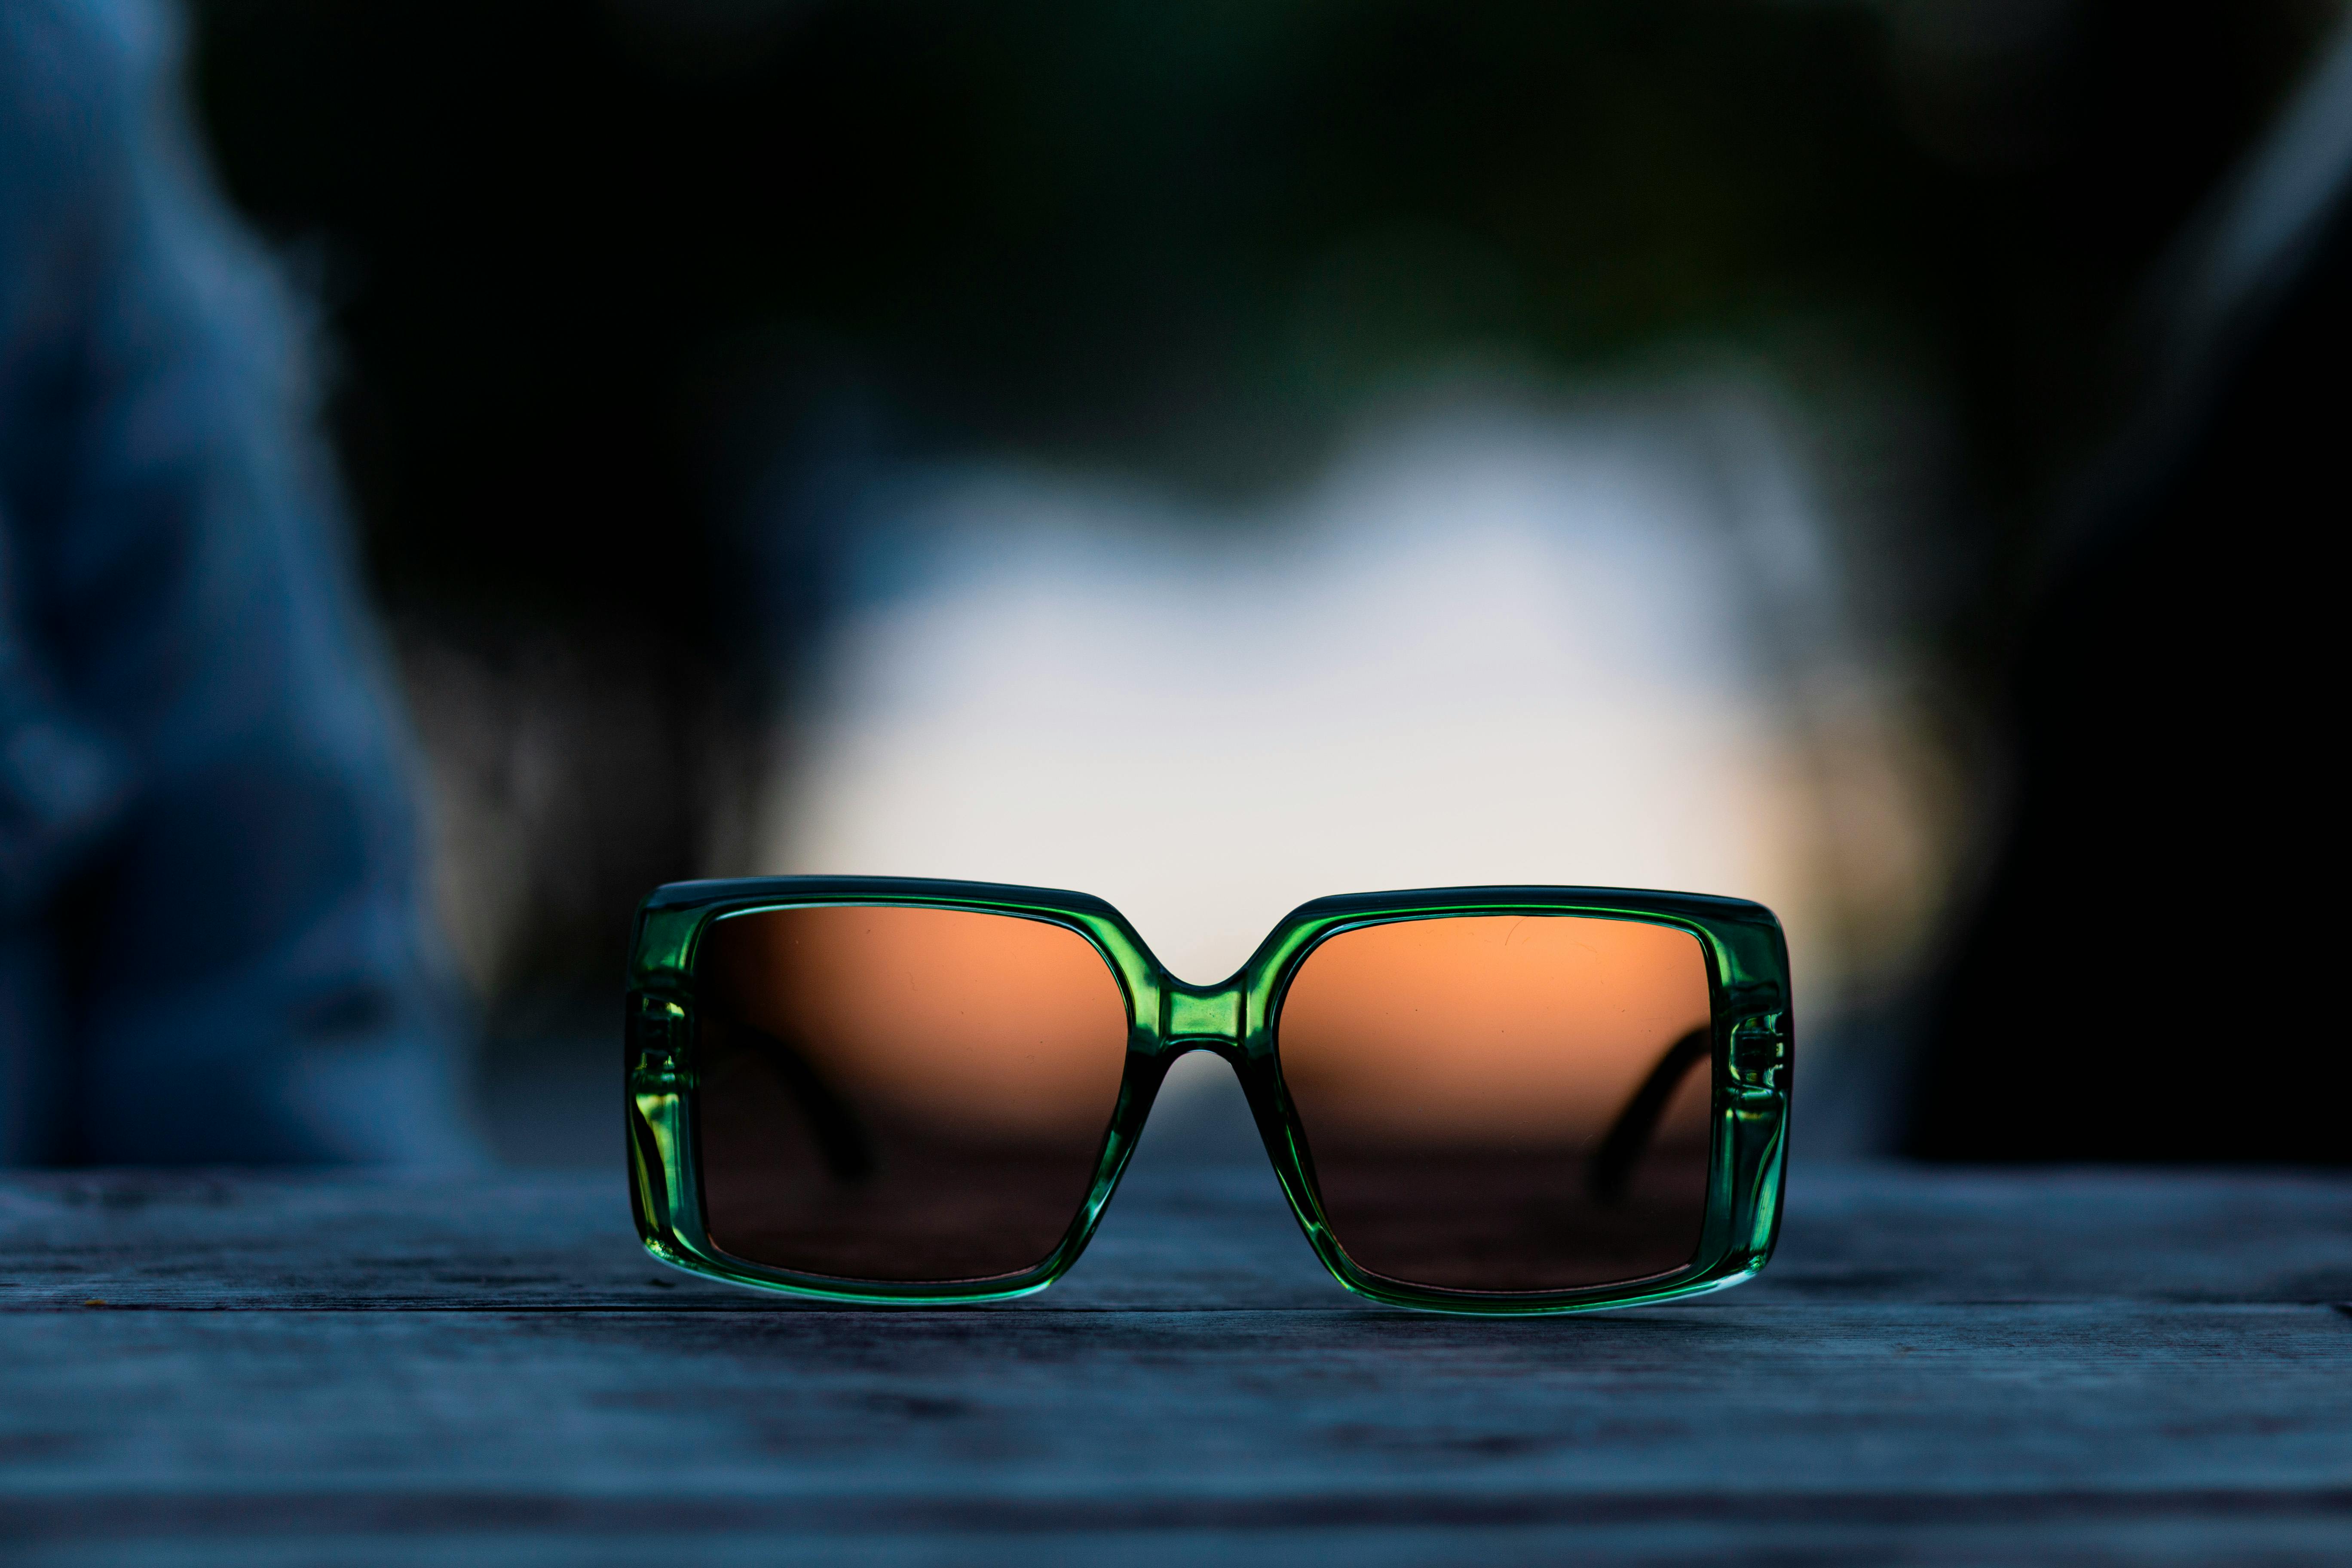 Klan Spænde Åh gud Gratis lagerfoto af firkantet form, grønt stel solbriller, mode, moderne,  solbriller, stil, tæt på, tilbehør